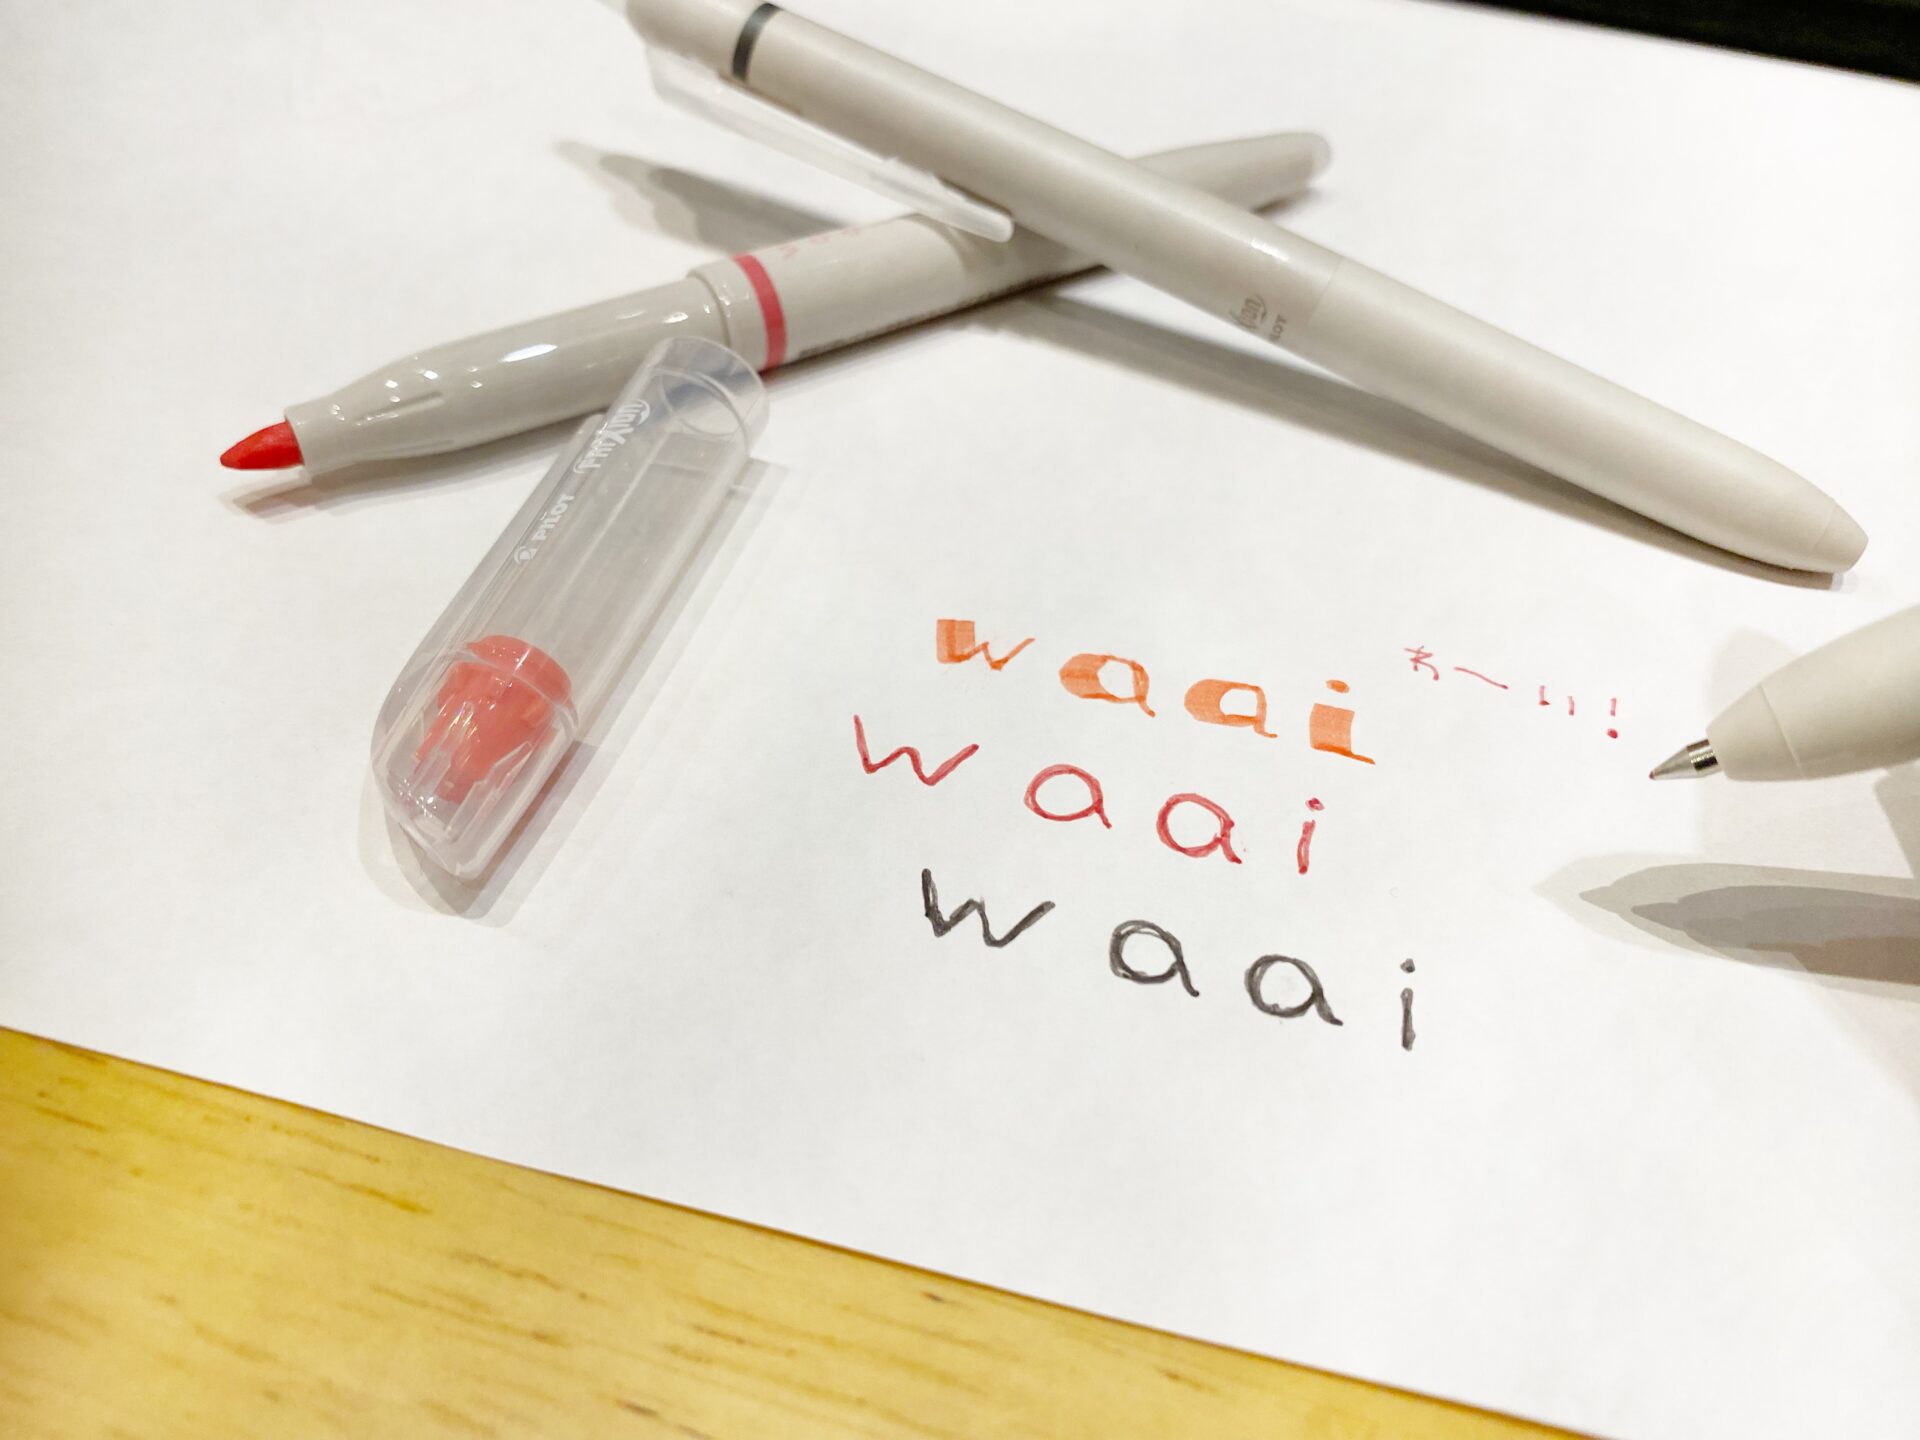 フリクションワーイのボールペン、マーカーで、白い紙にワーイのロゴを書いた写真。失敗しても消せるのが特徴のボールペンとマーカーです